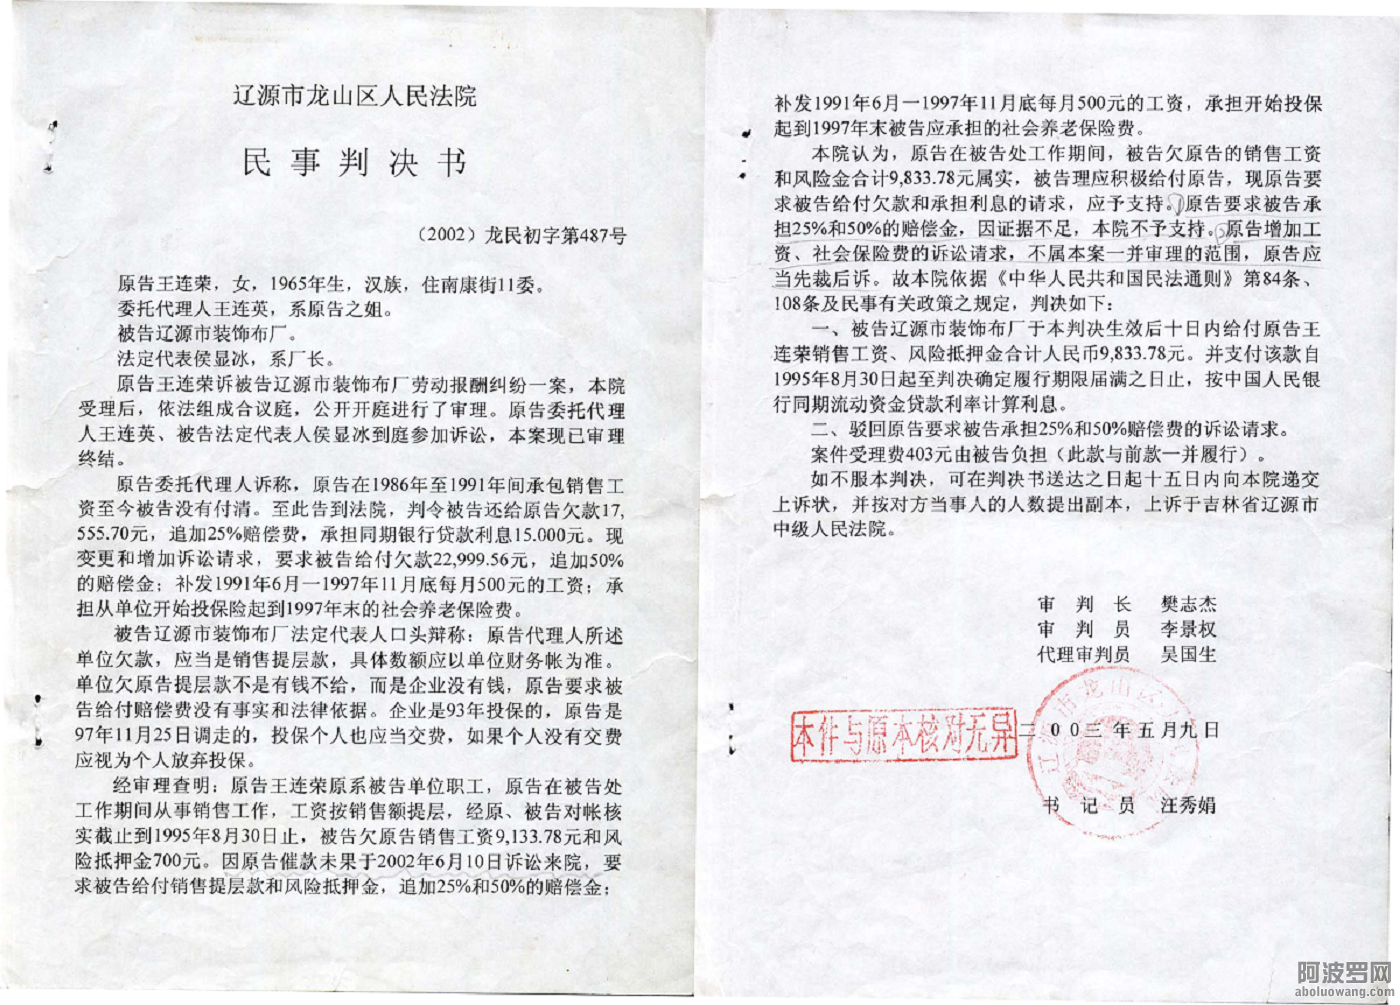 2-王连荣2002龙民初字第487号民事判决书第1页和2页.png